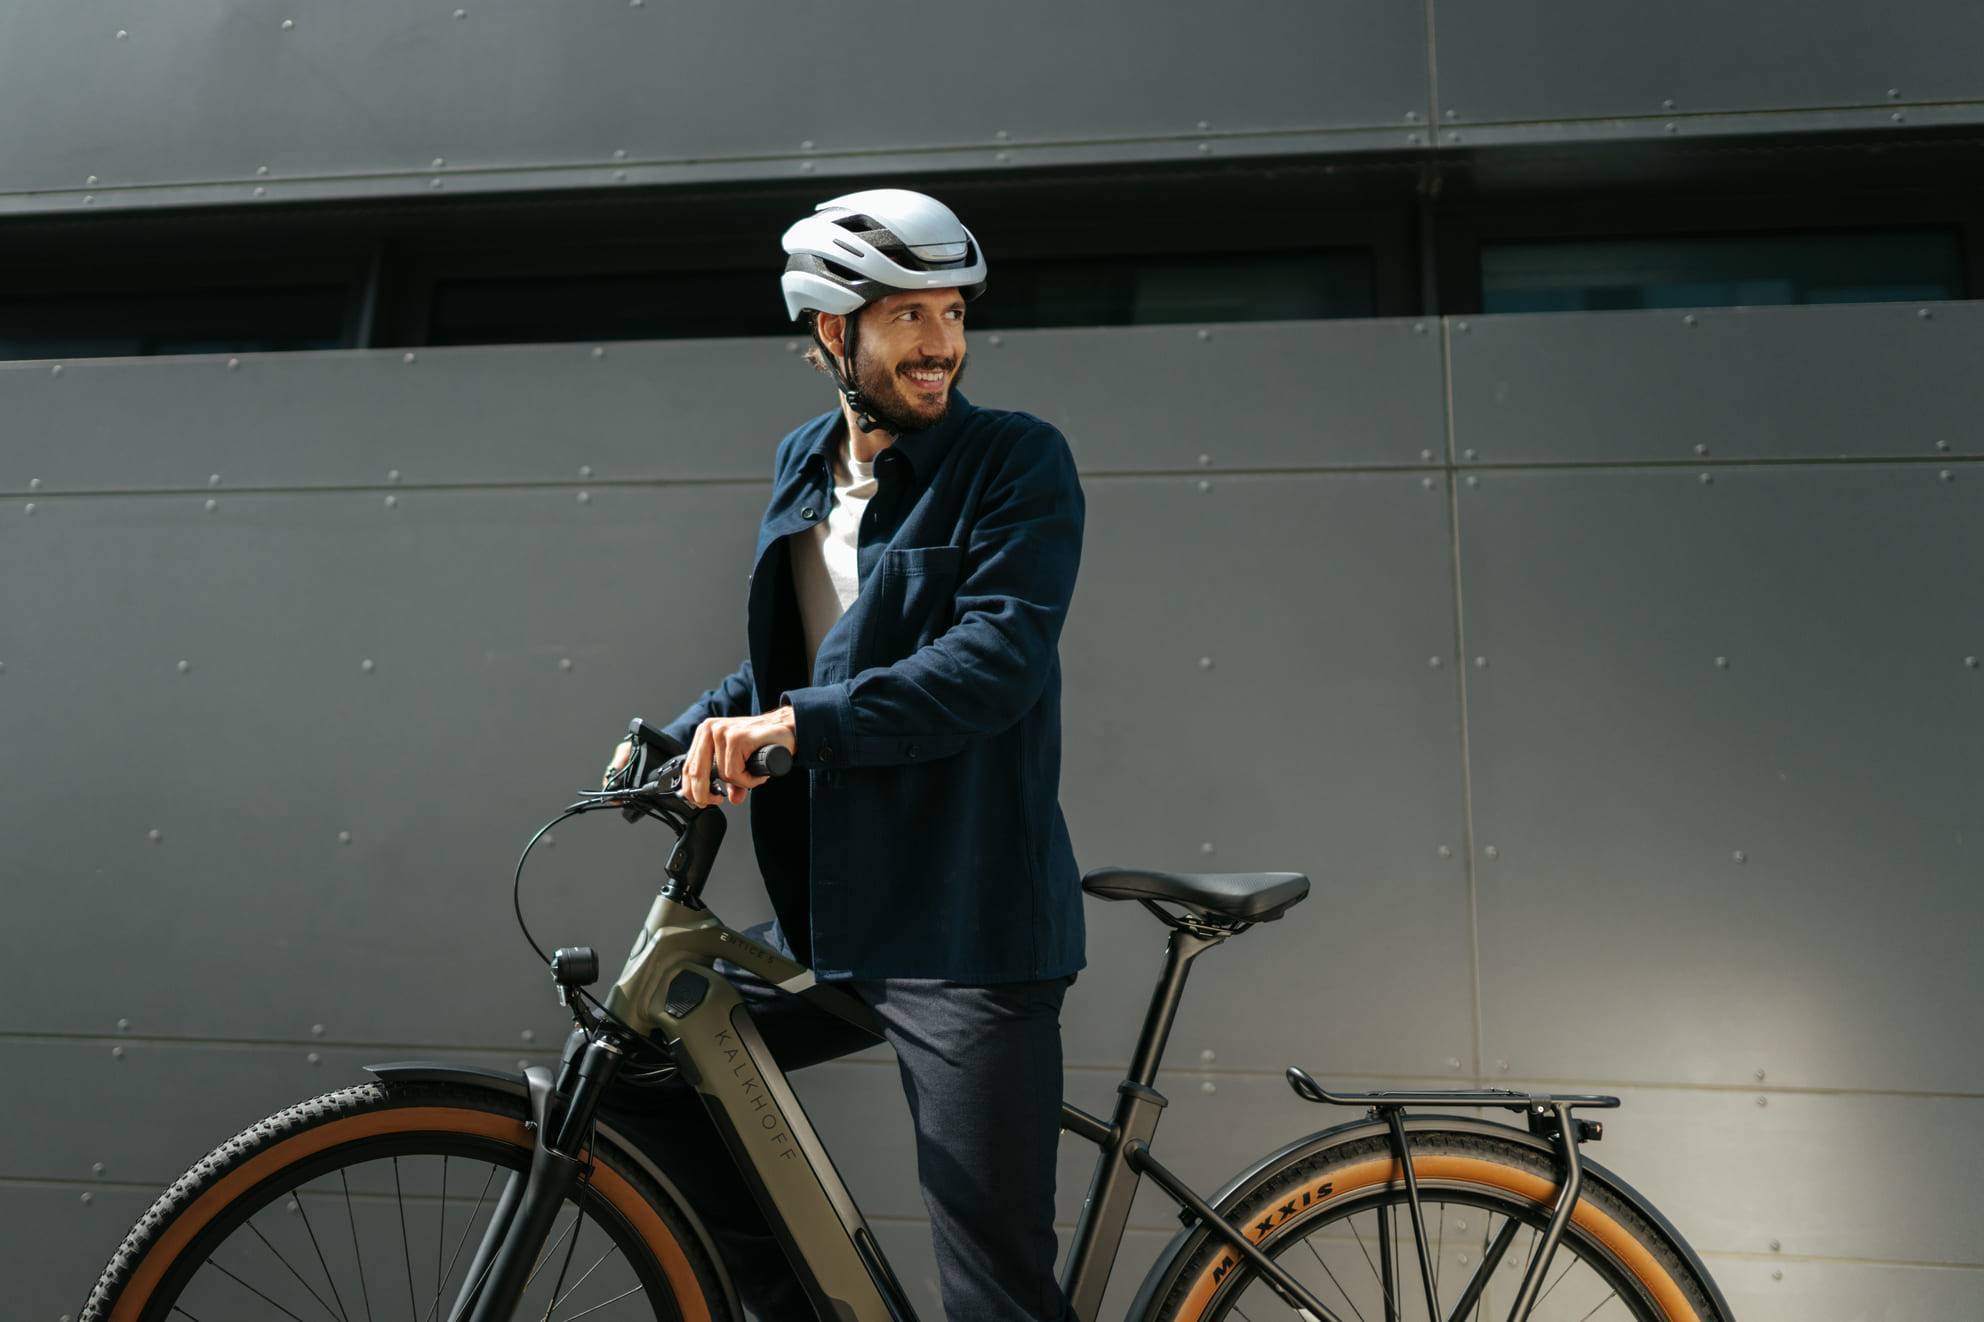 Mann steht mit Fahrrad vor Wand und blickt lachend zurück